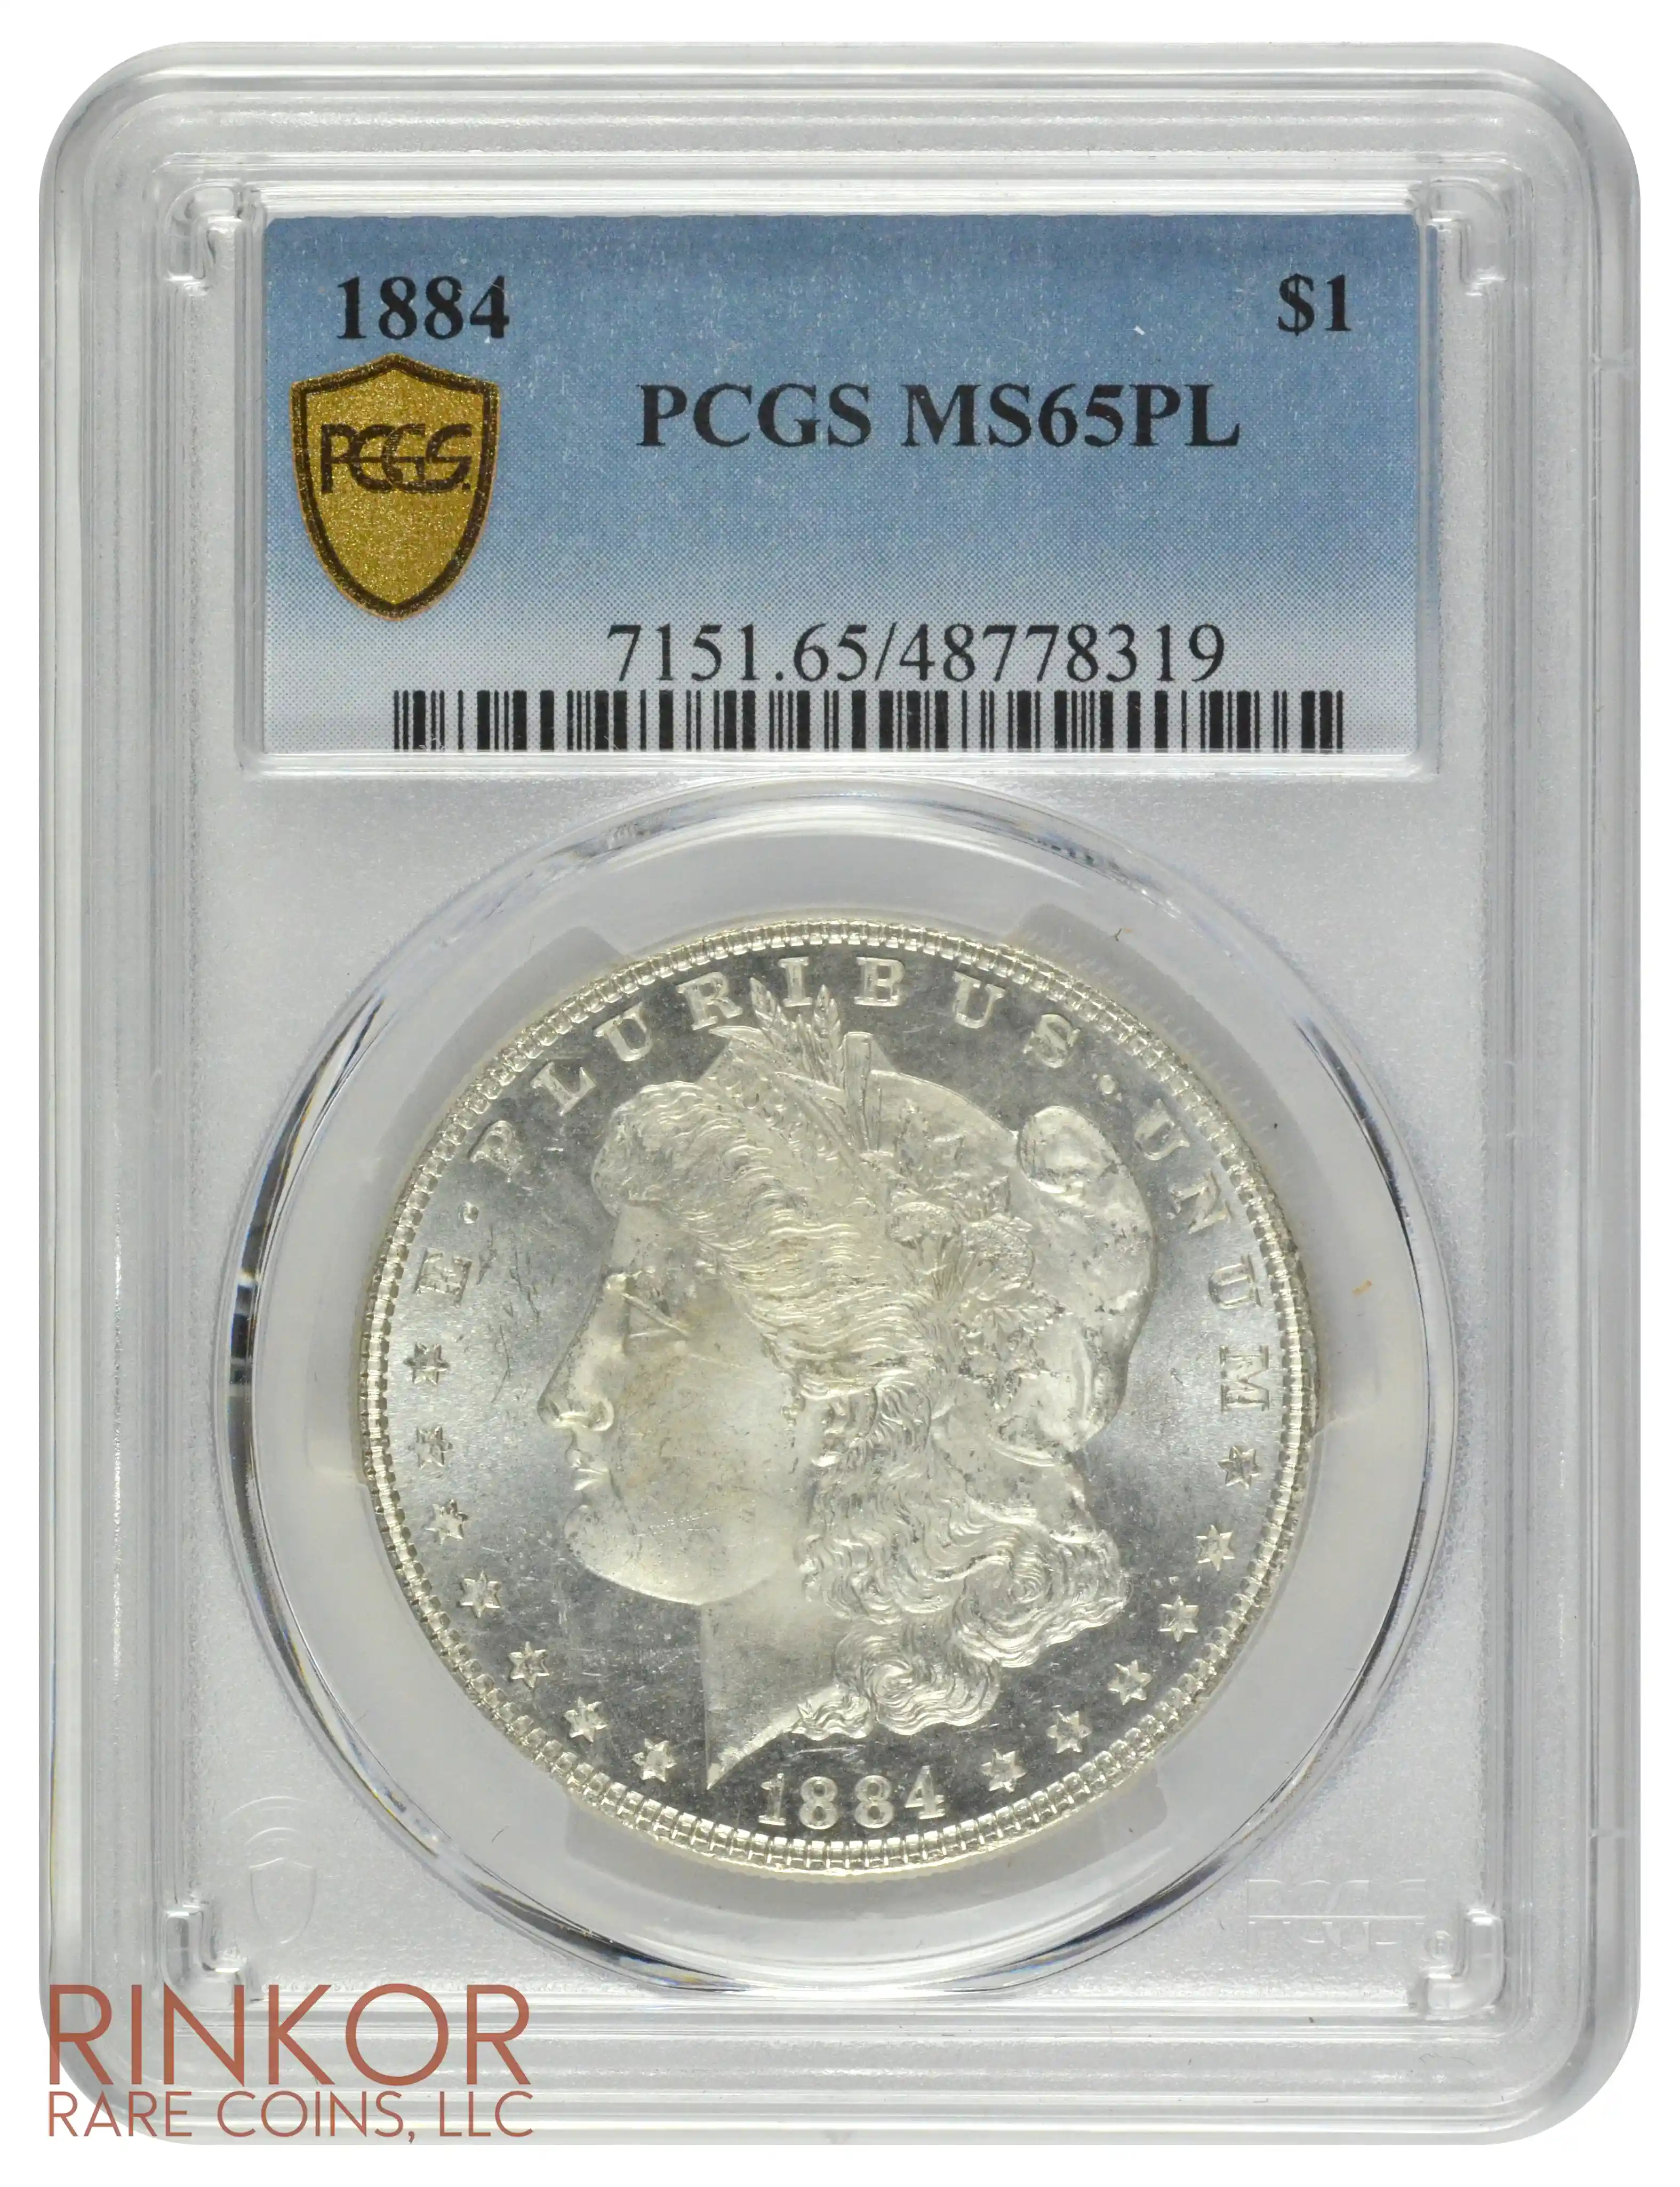 1884 $1 PCGS MS 65 PL